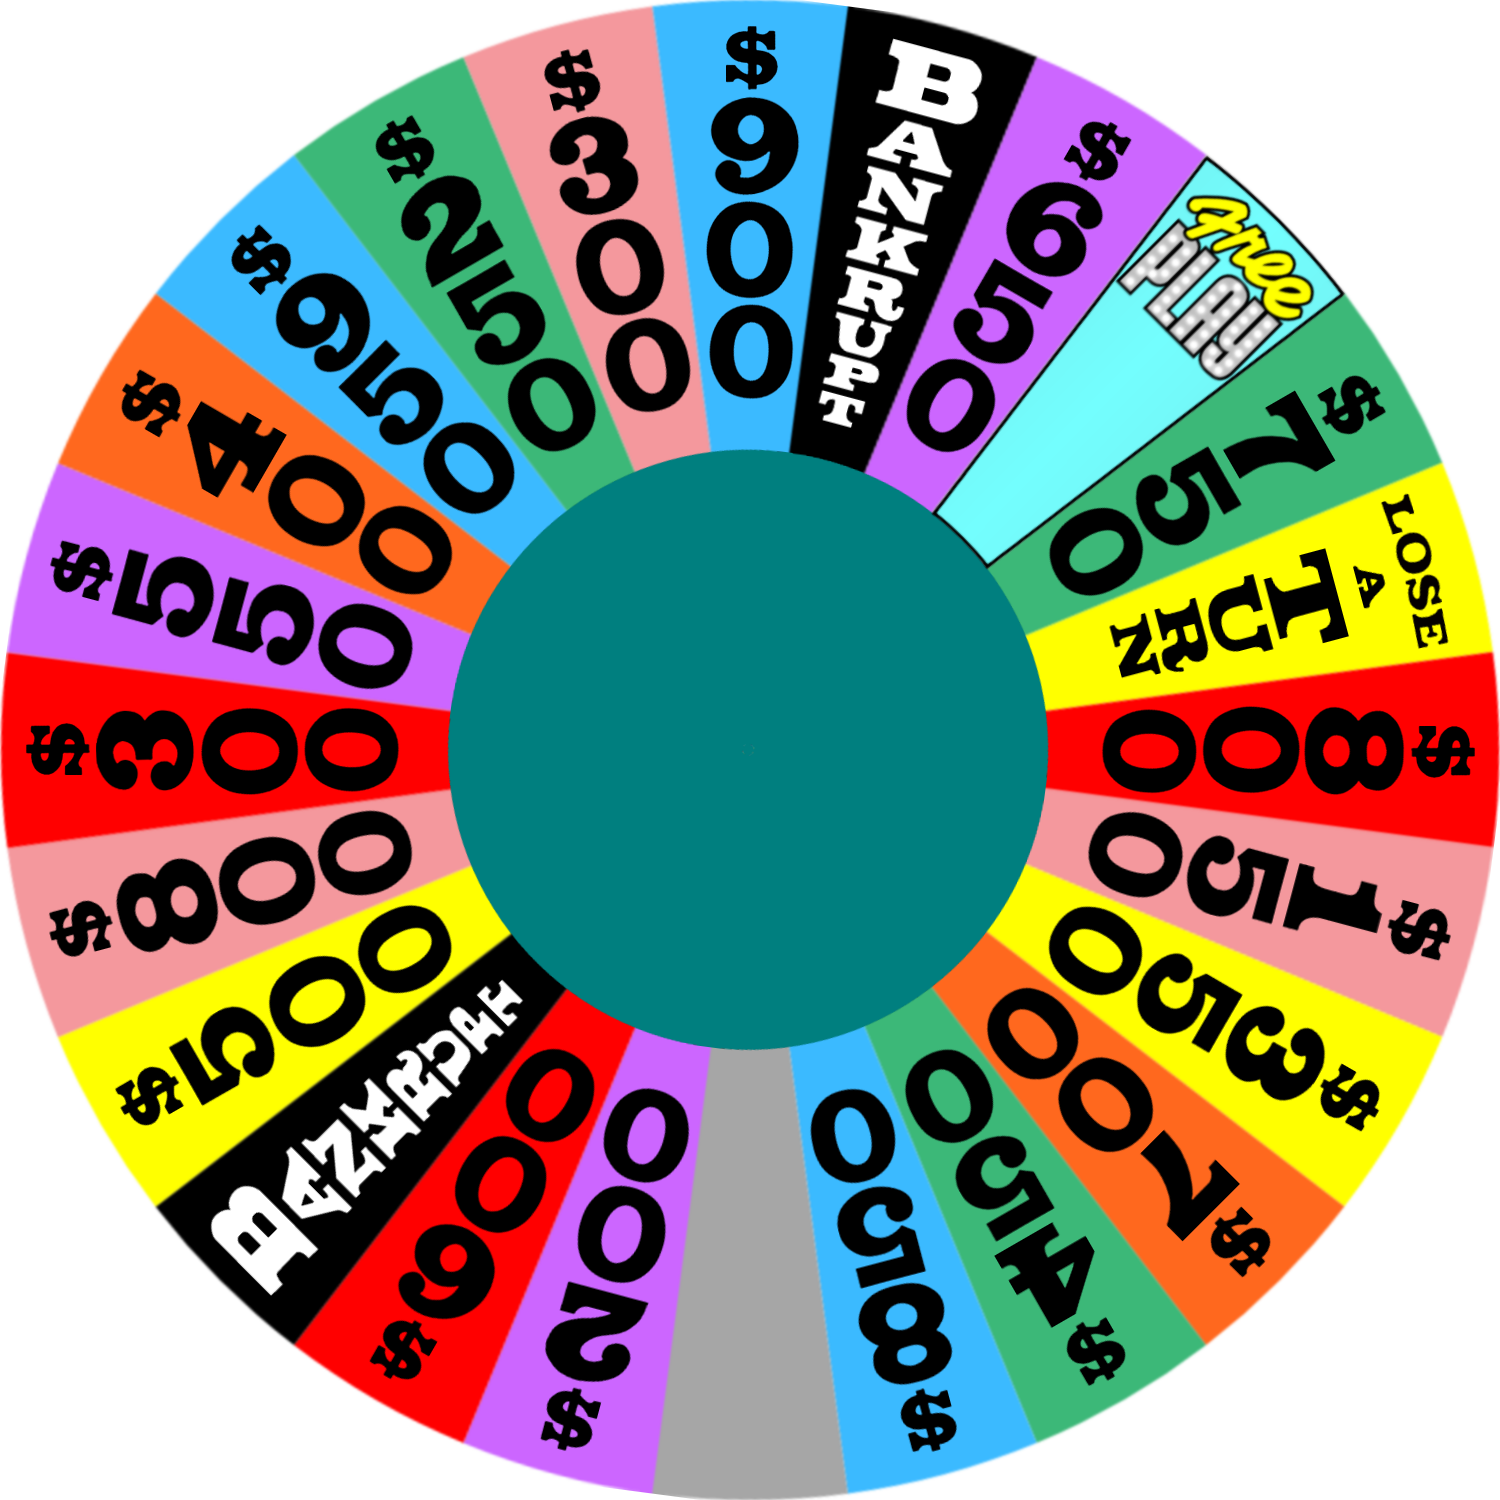 Rondane's Wheel of Fortune V1